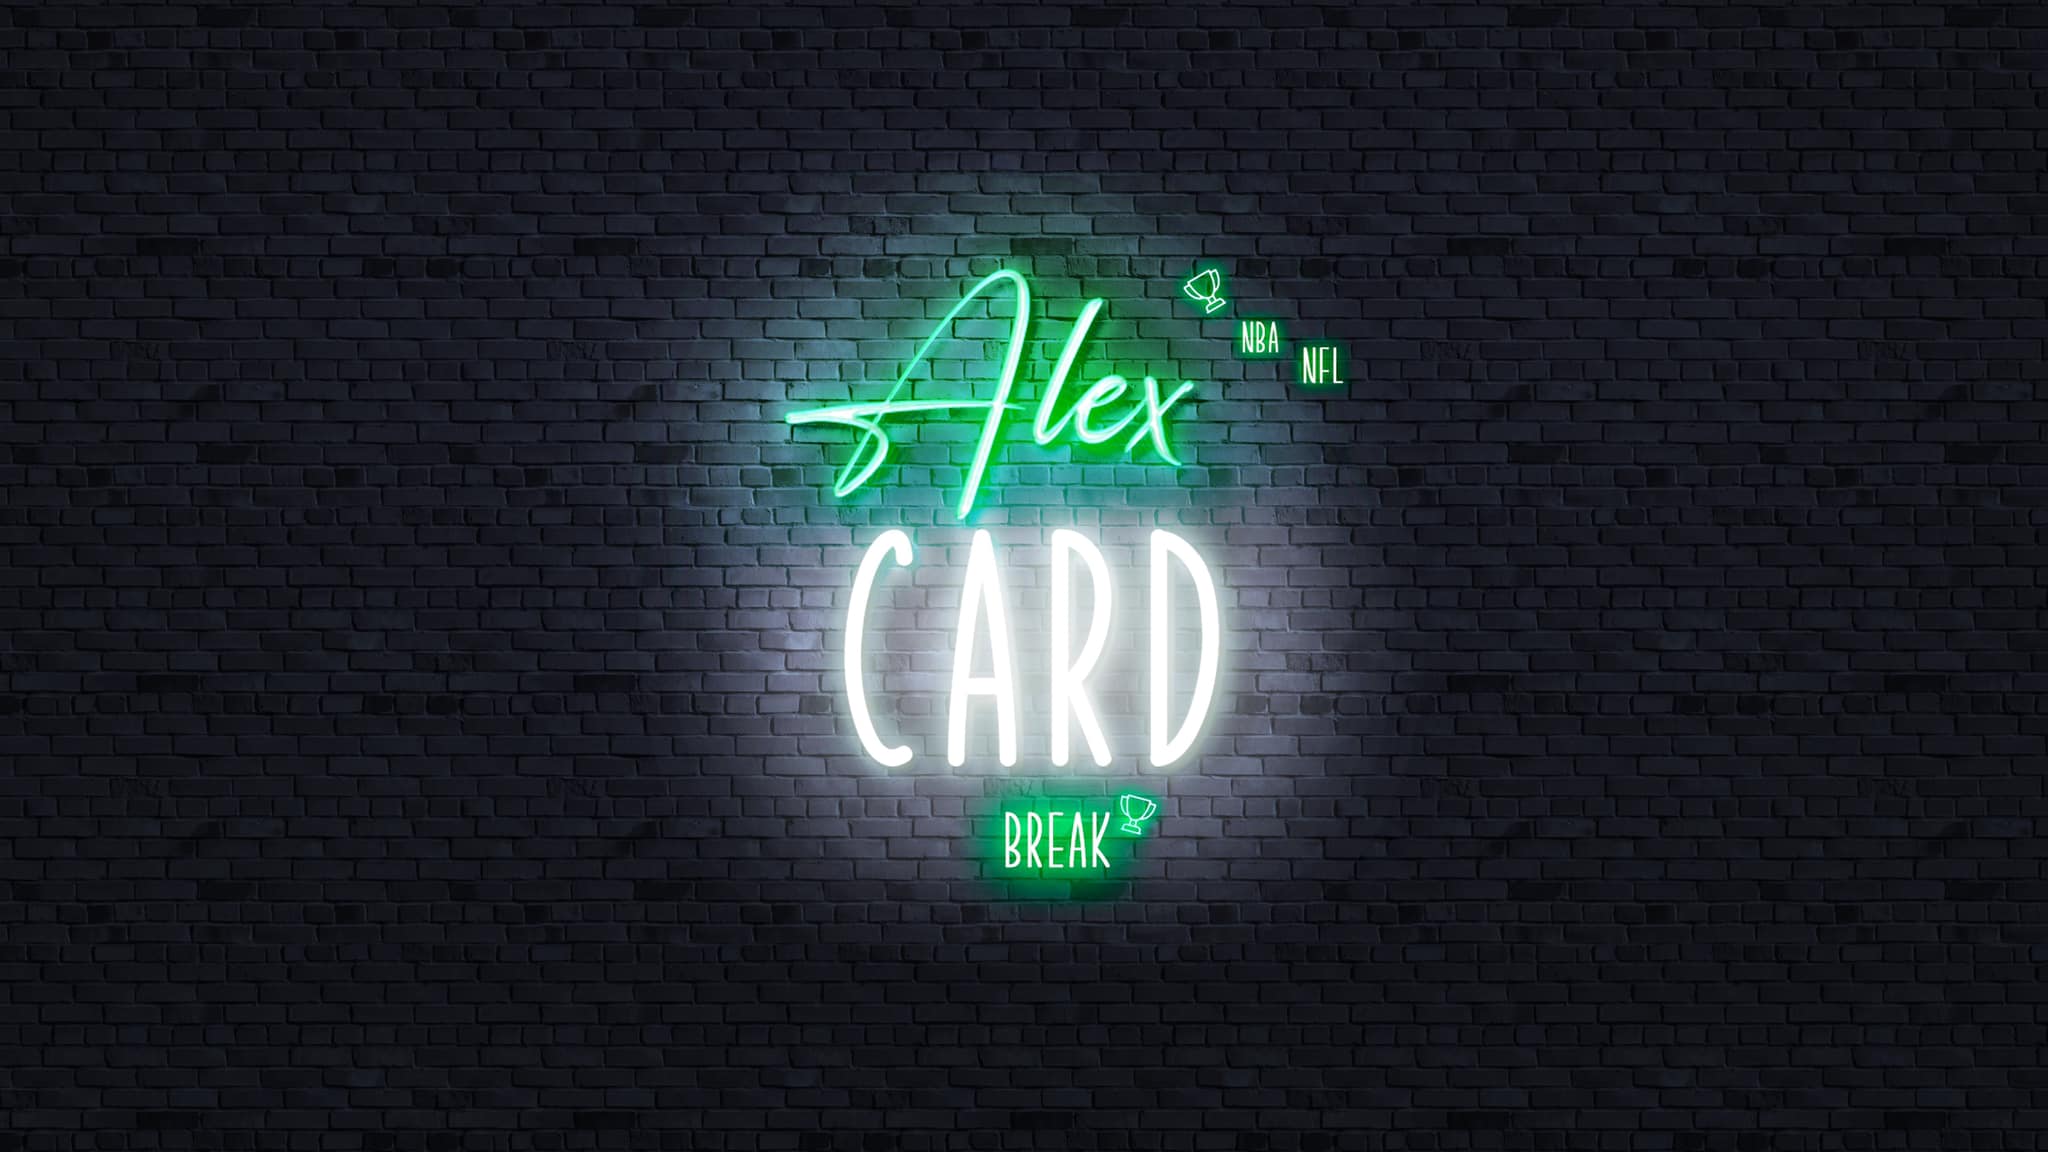 Alex Card Break